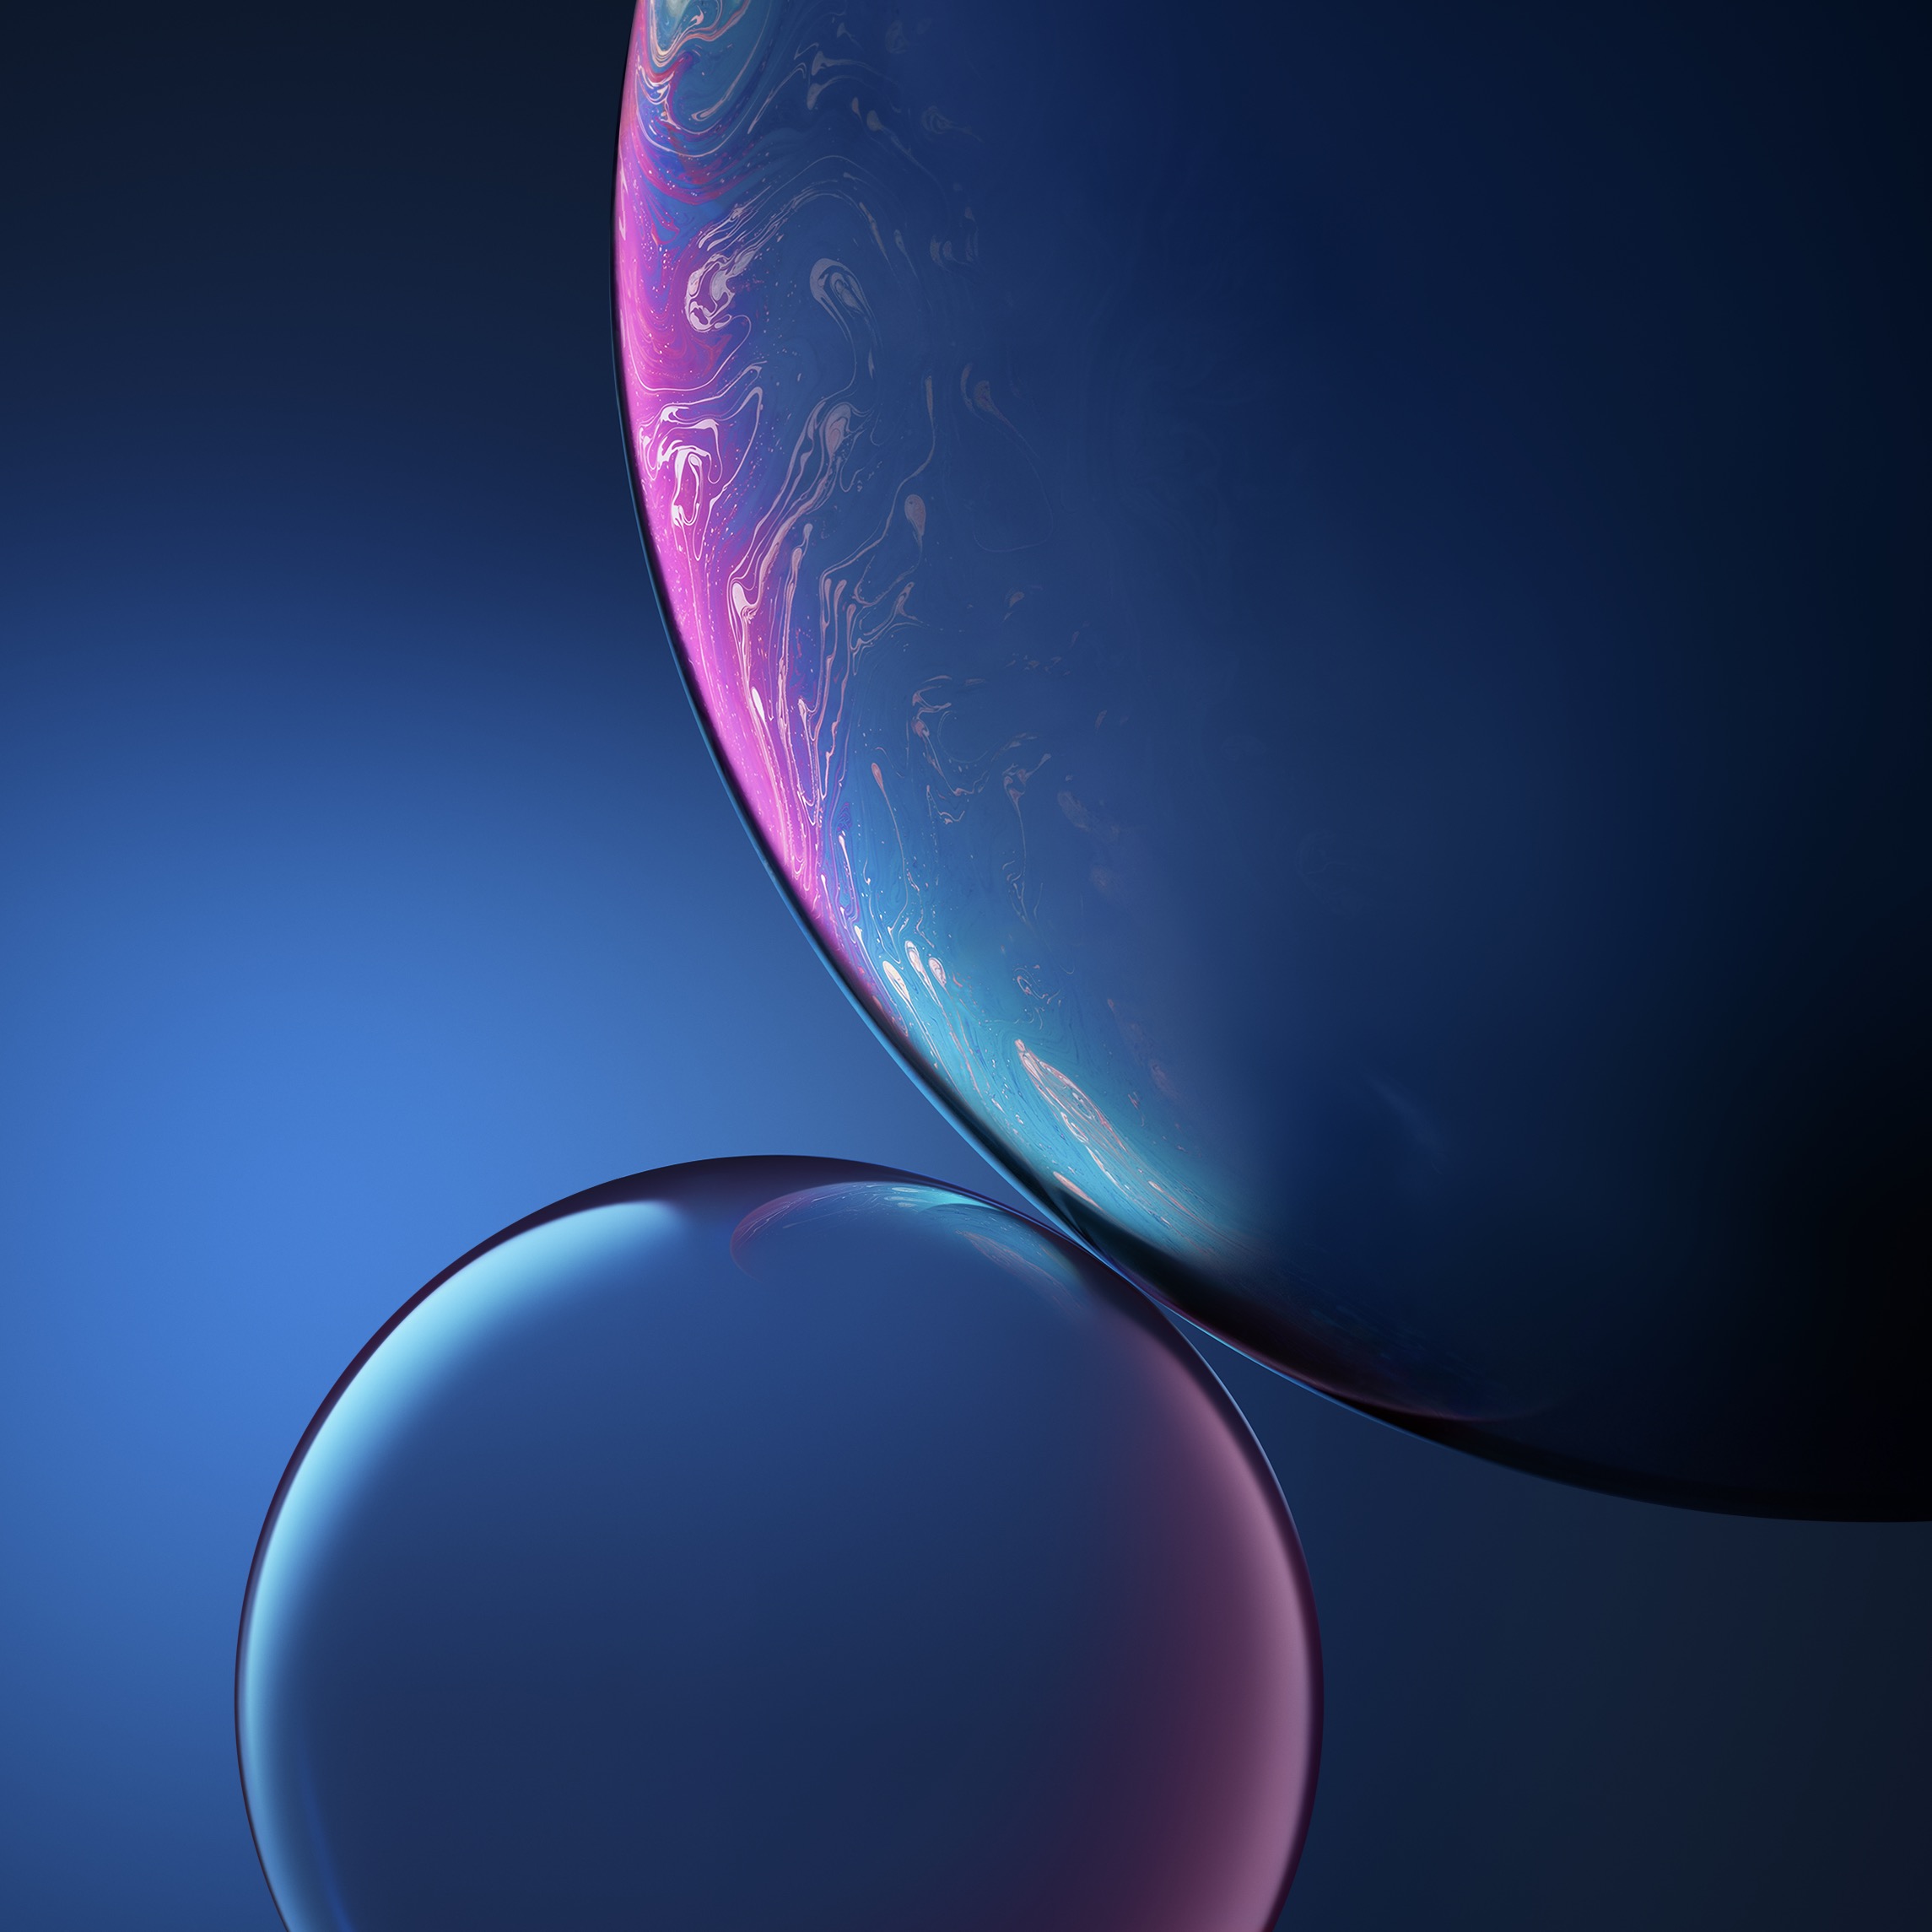 iphoneXR手机壁纸-蓝色星球